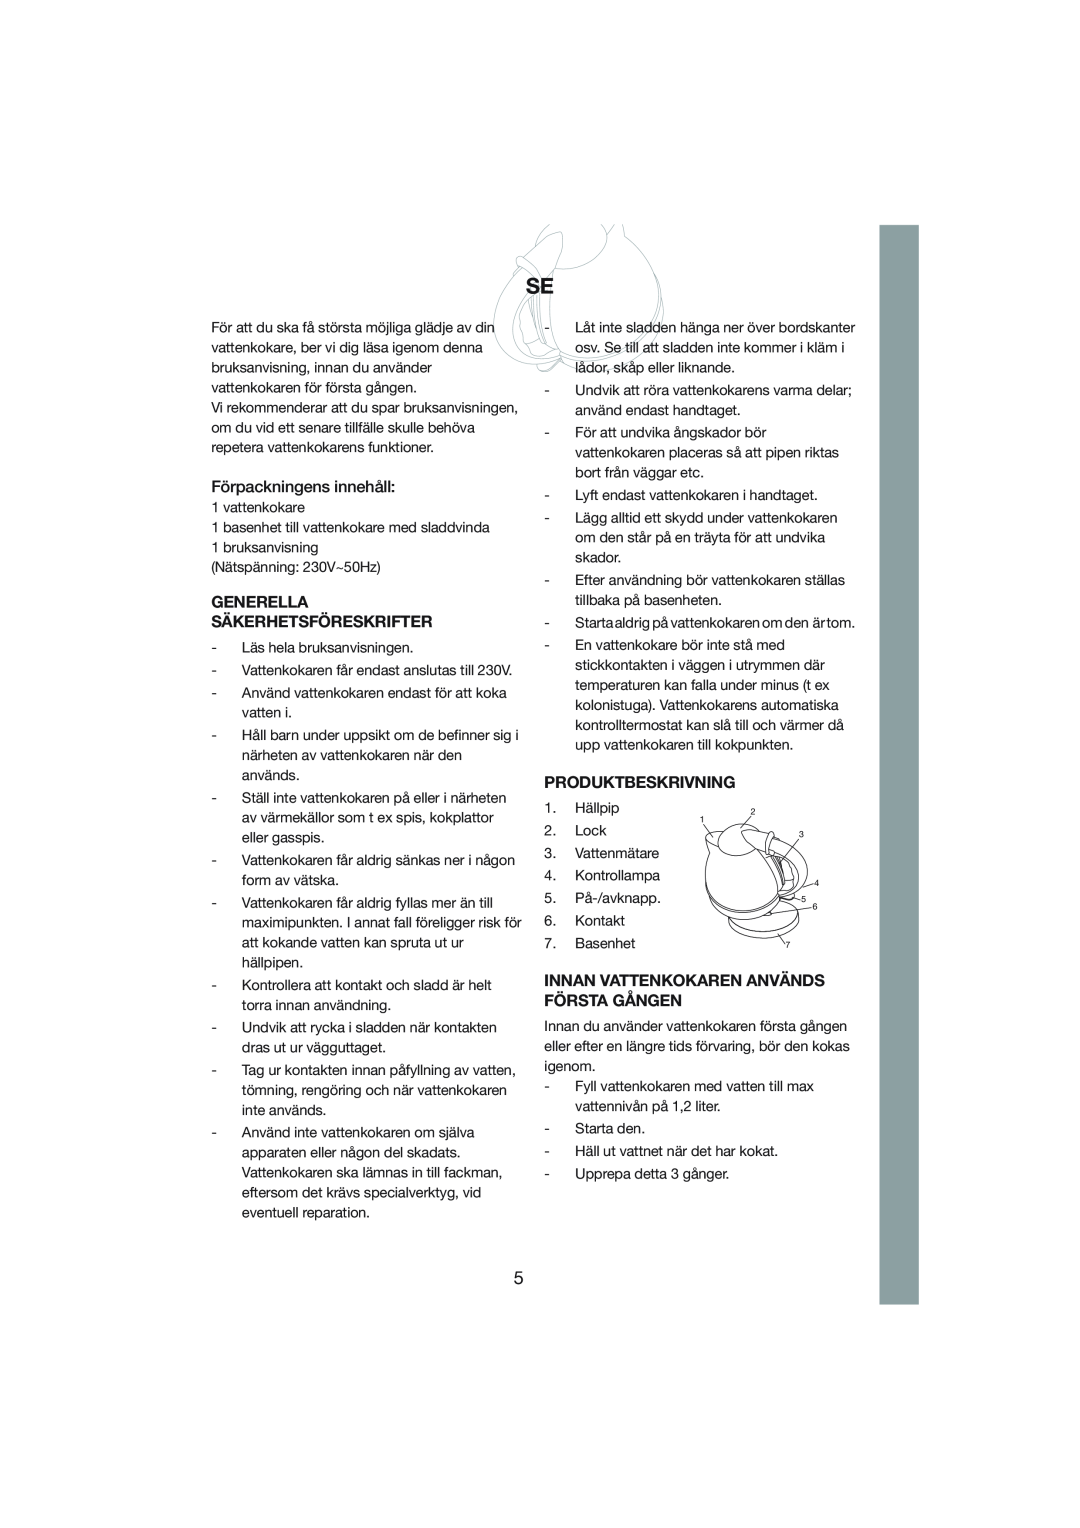 Melissa 245-015 manual Förpackningens innehåll, Generella Säkerhetsföreskrifter, Produktbeskrivning 